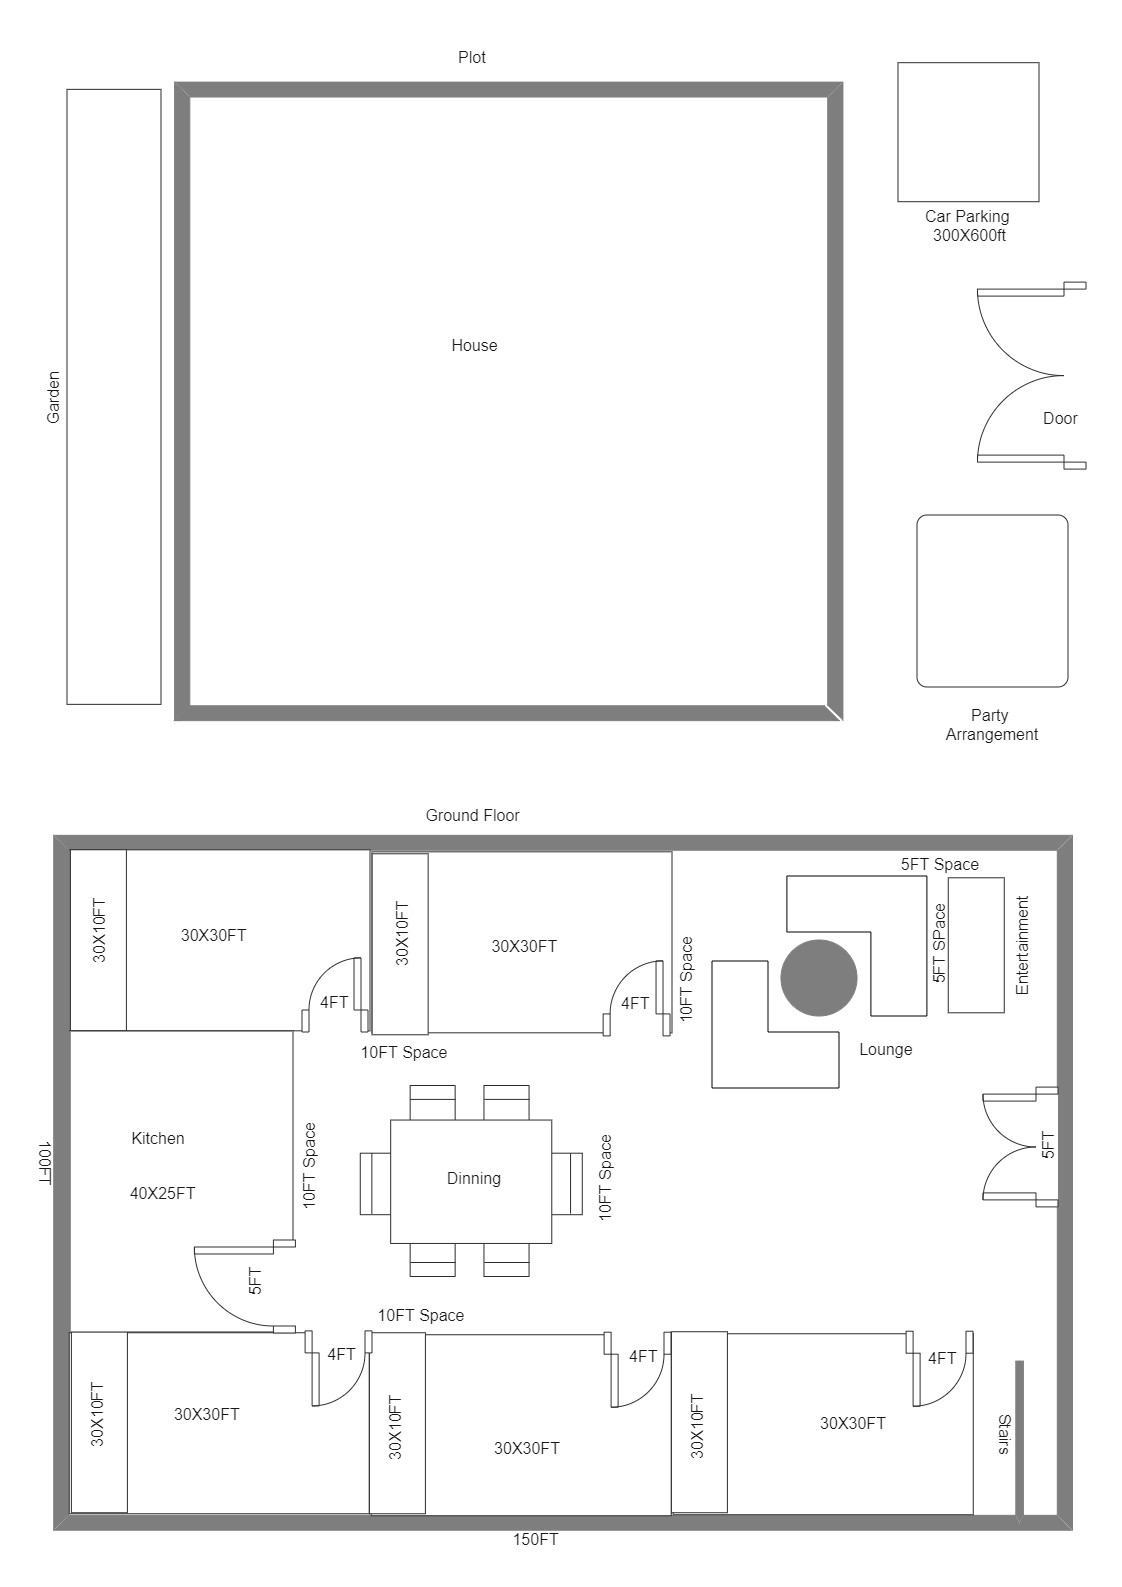 Rana Naskar's House Drawing Plan